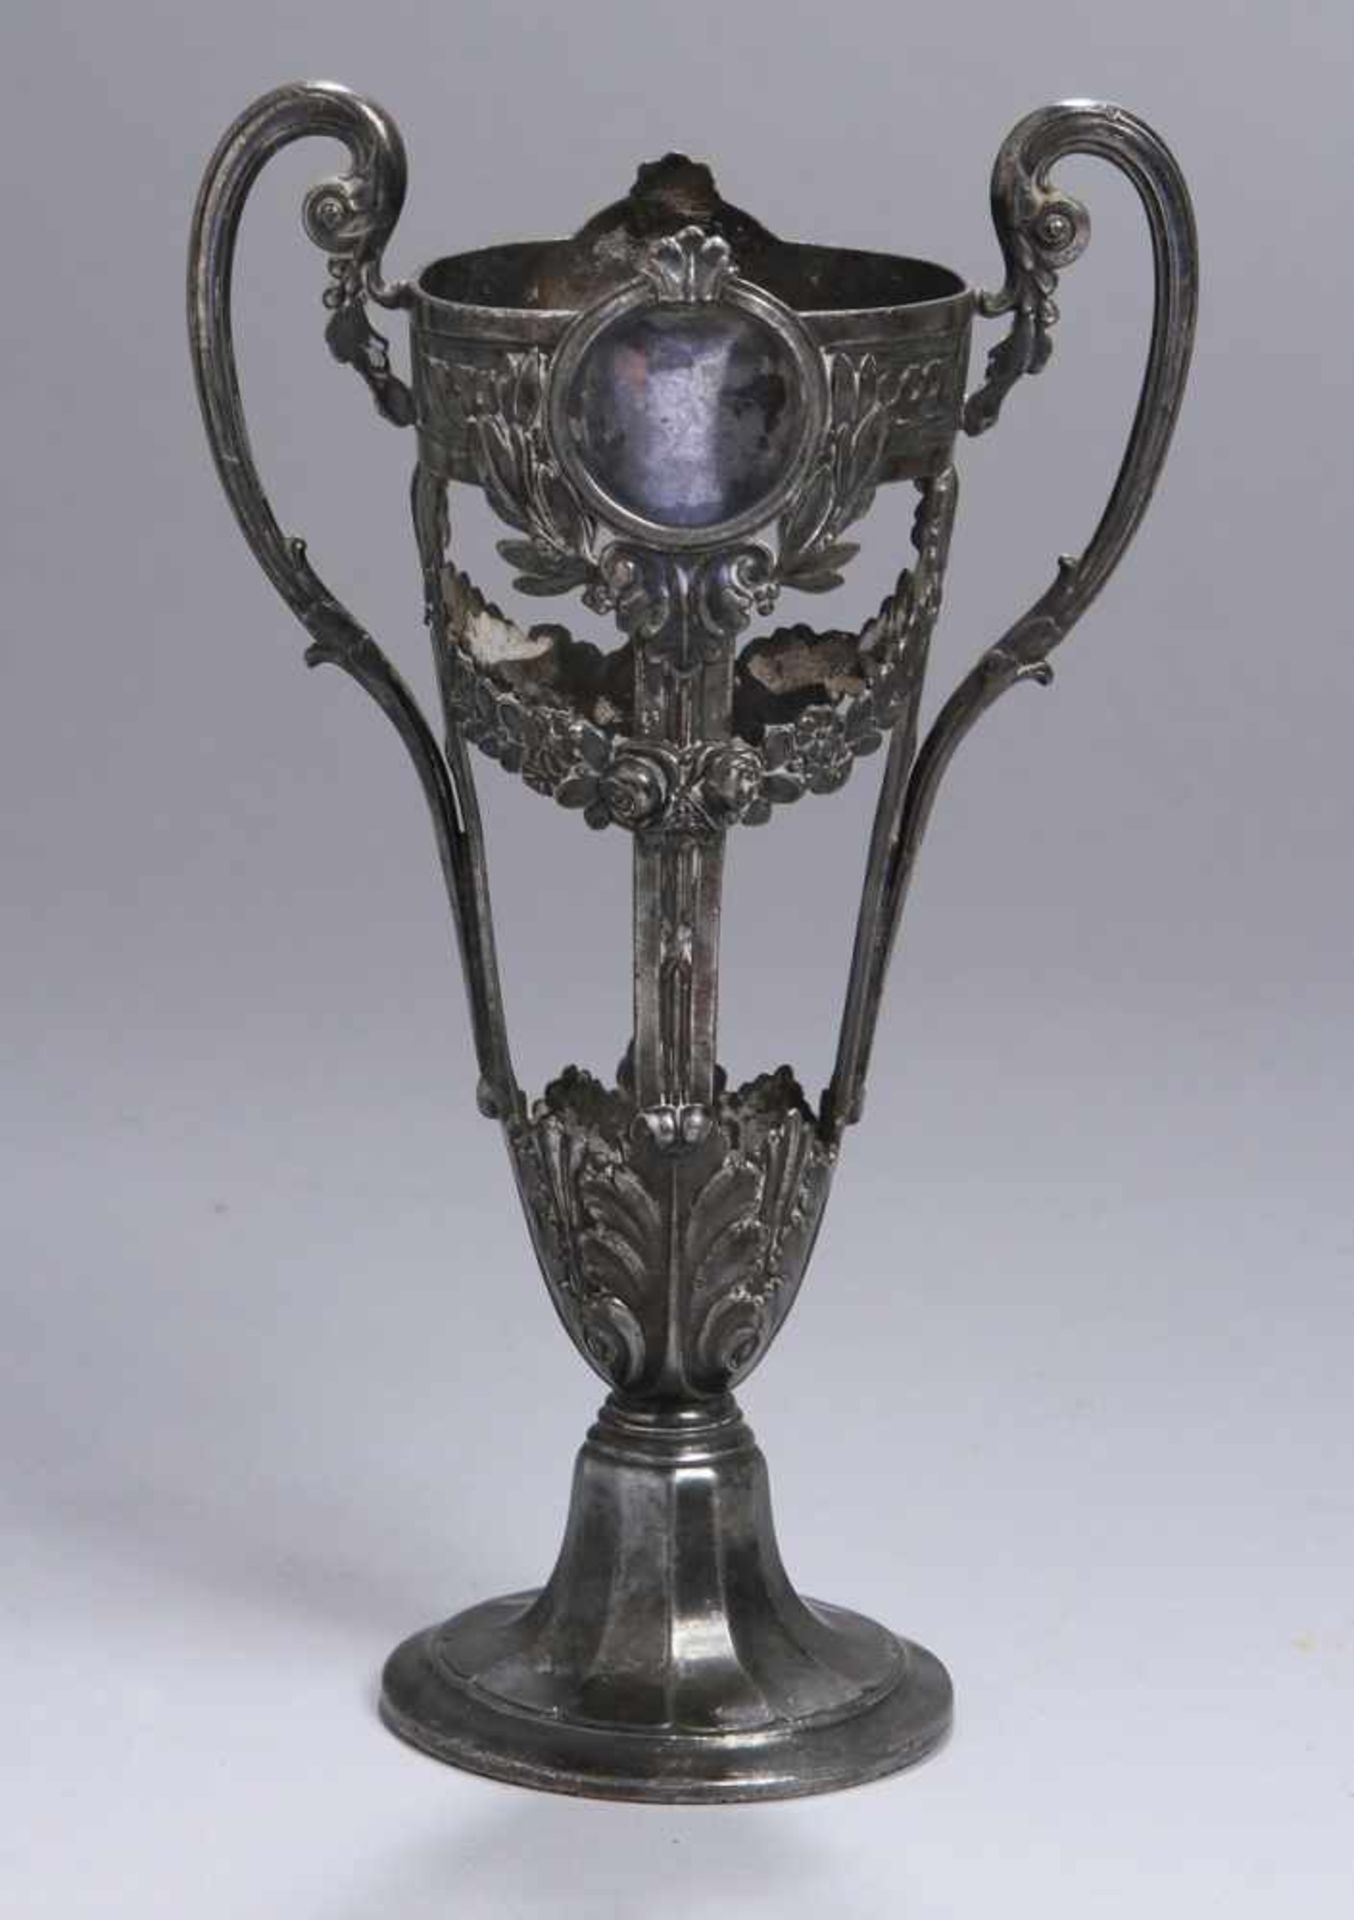 Metall-Vasenhalterung, F. W. Quist, Esslingen, um 1905, Mod.nr.: 6687, Rundstand,durchbrochen